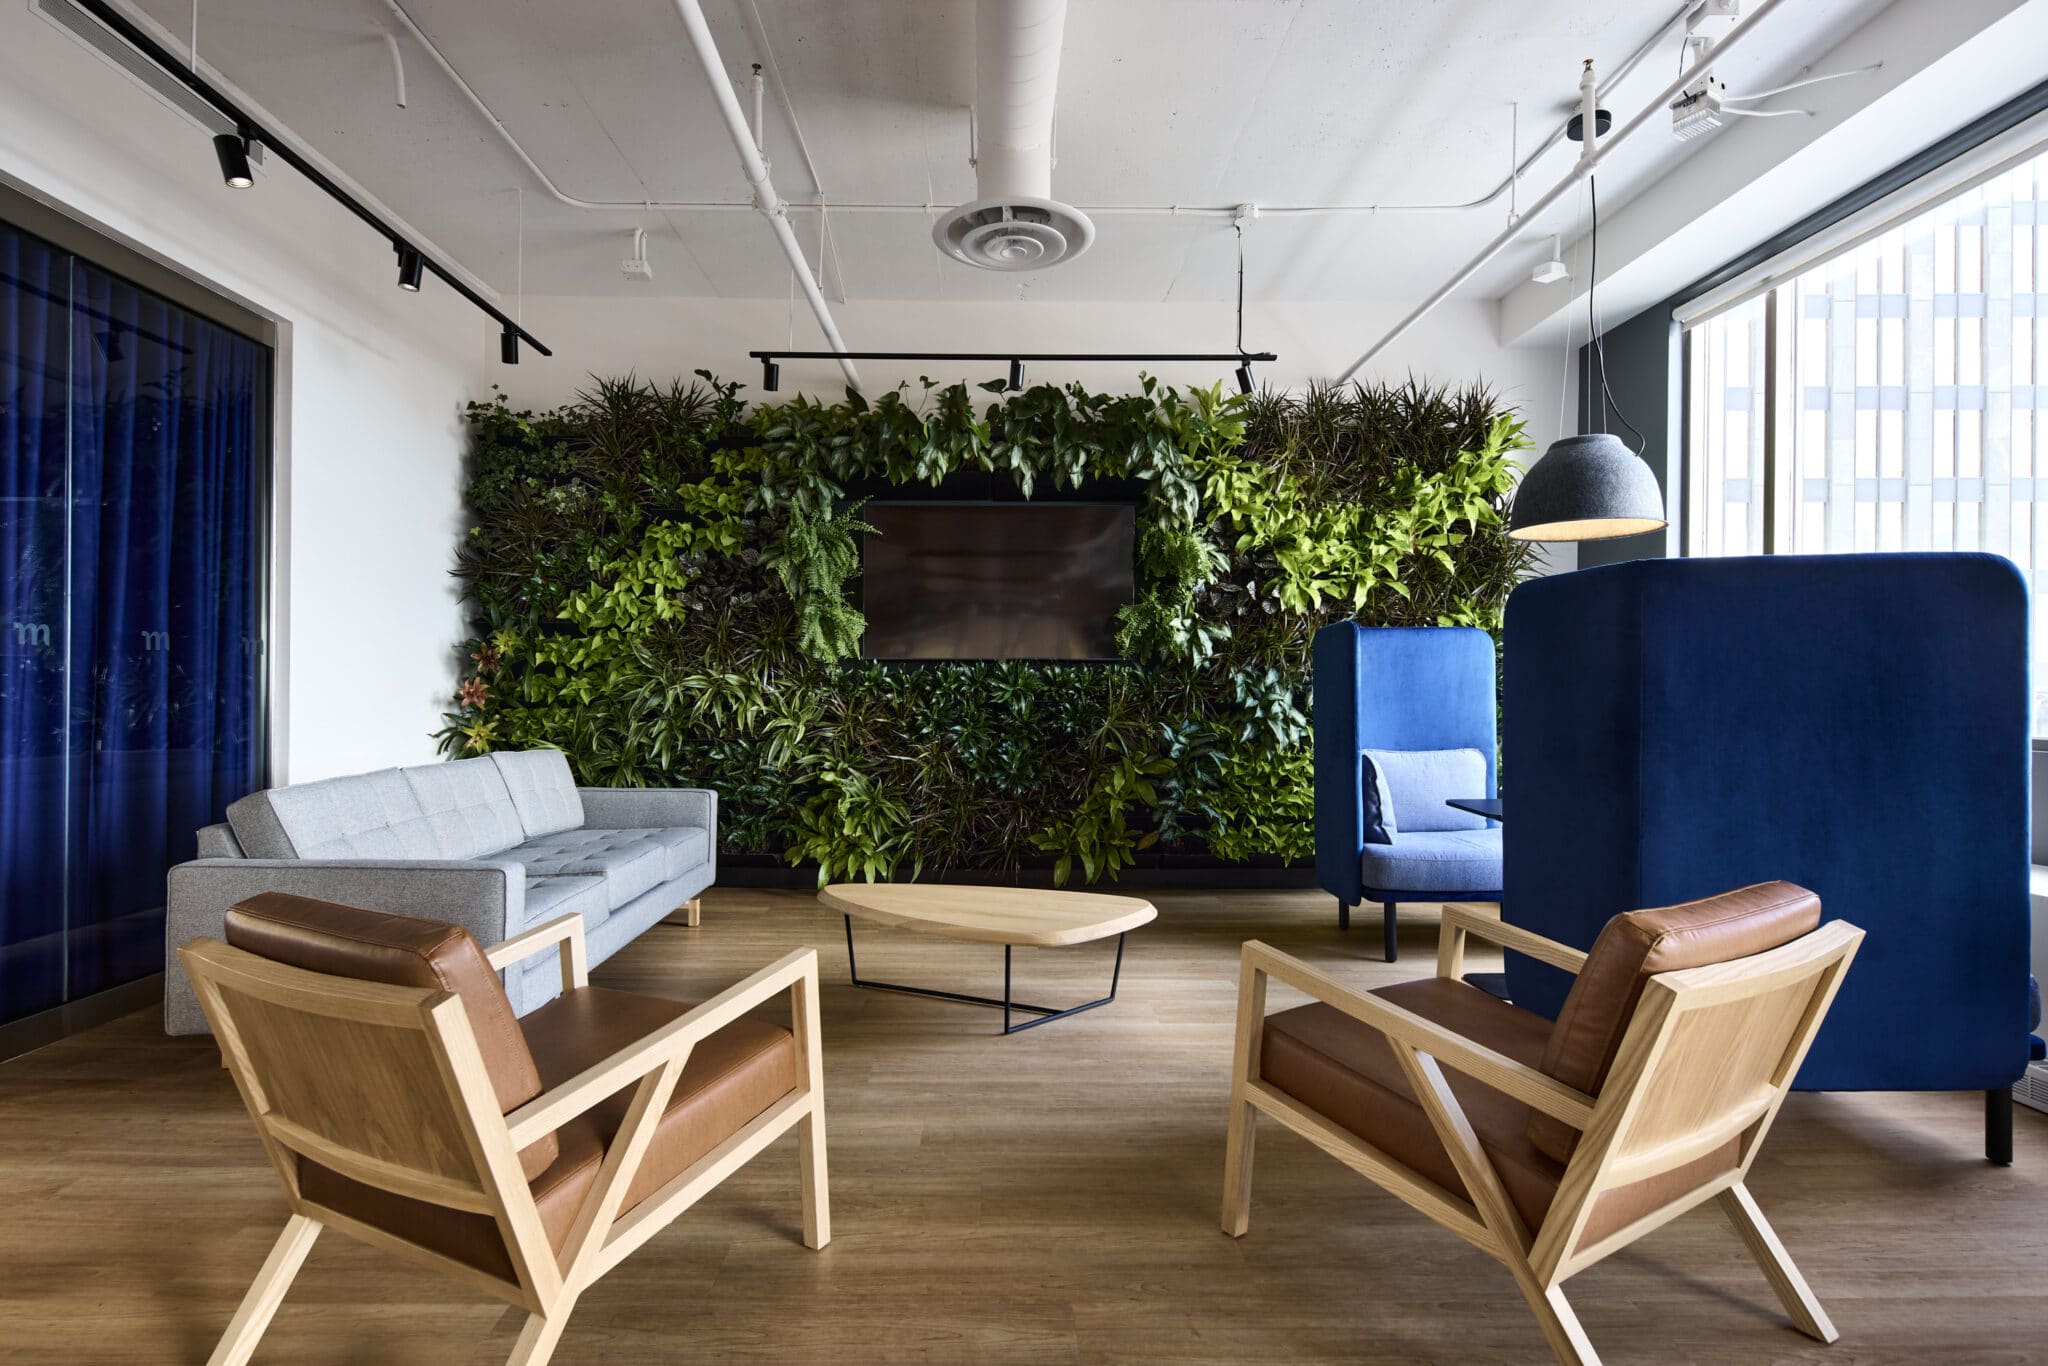 Projet de design corporatif - Salon et mur végétal au siège social de Mazars à Montréal par VAD Designers d'intérieur commercial.